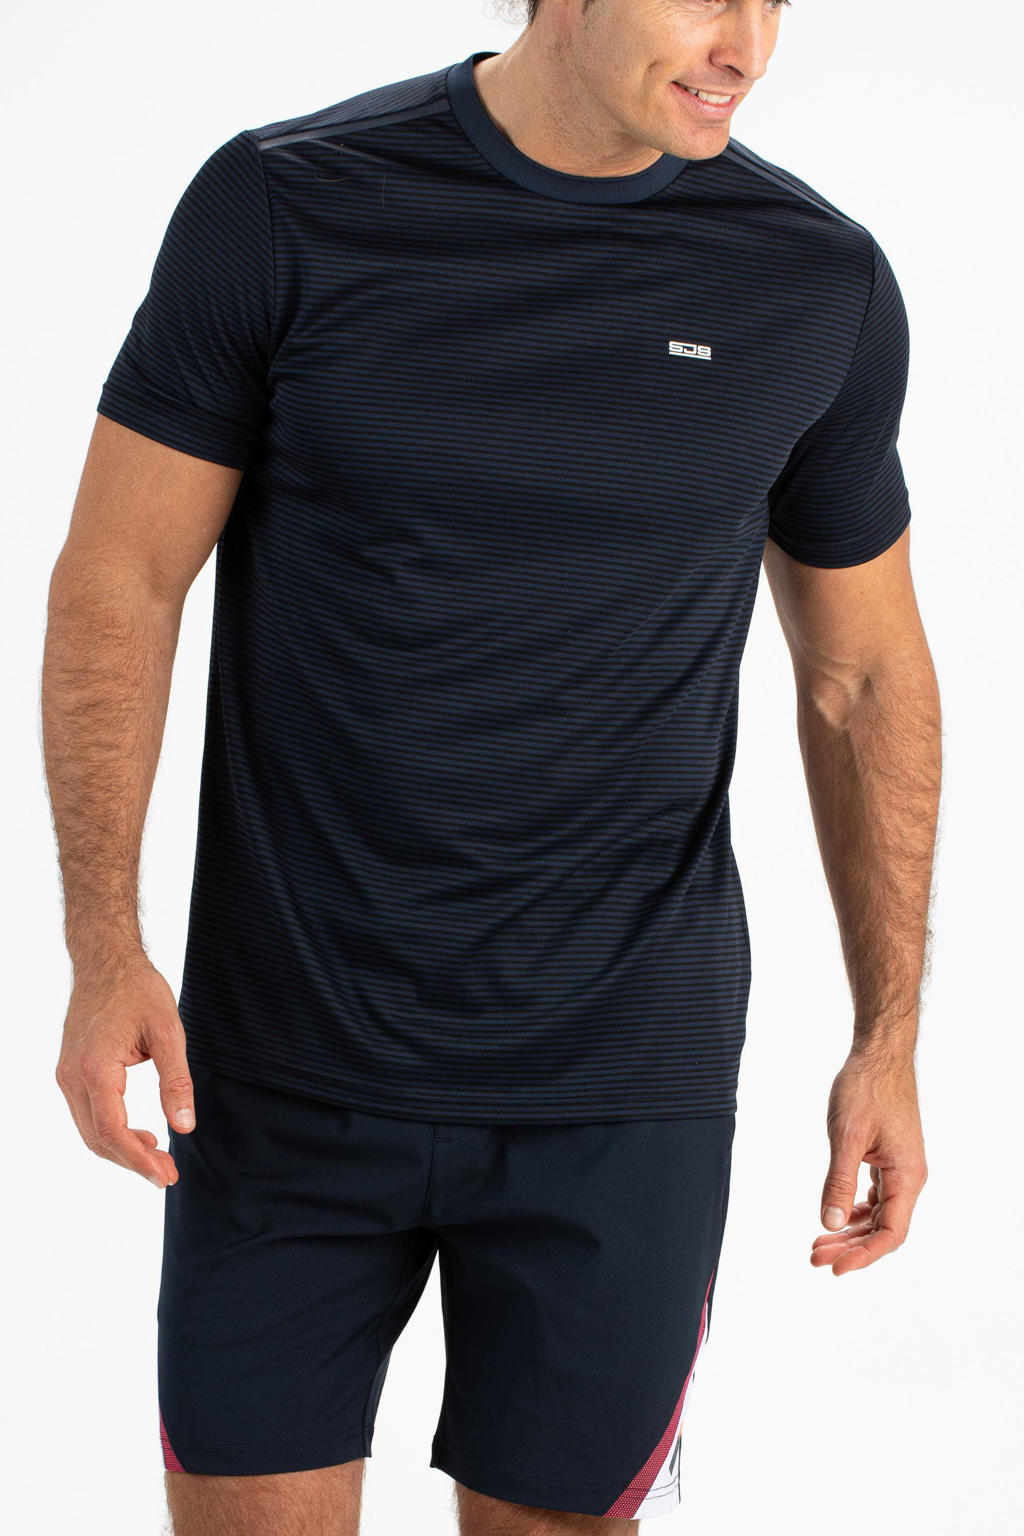 Donkerblauwe heren Sjeng Sports sport T-shirt Tex van polyester met korte mouwen en ronde hals